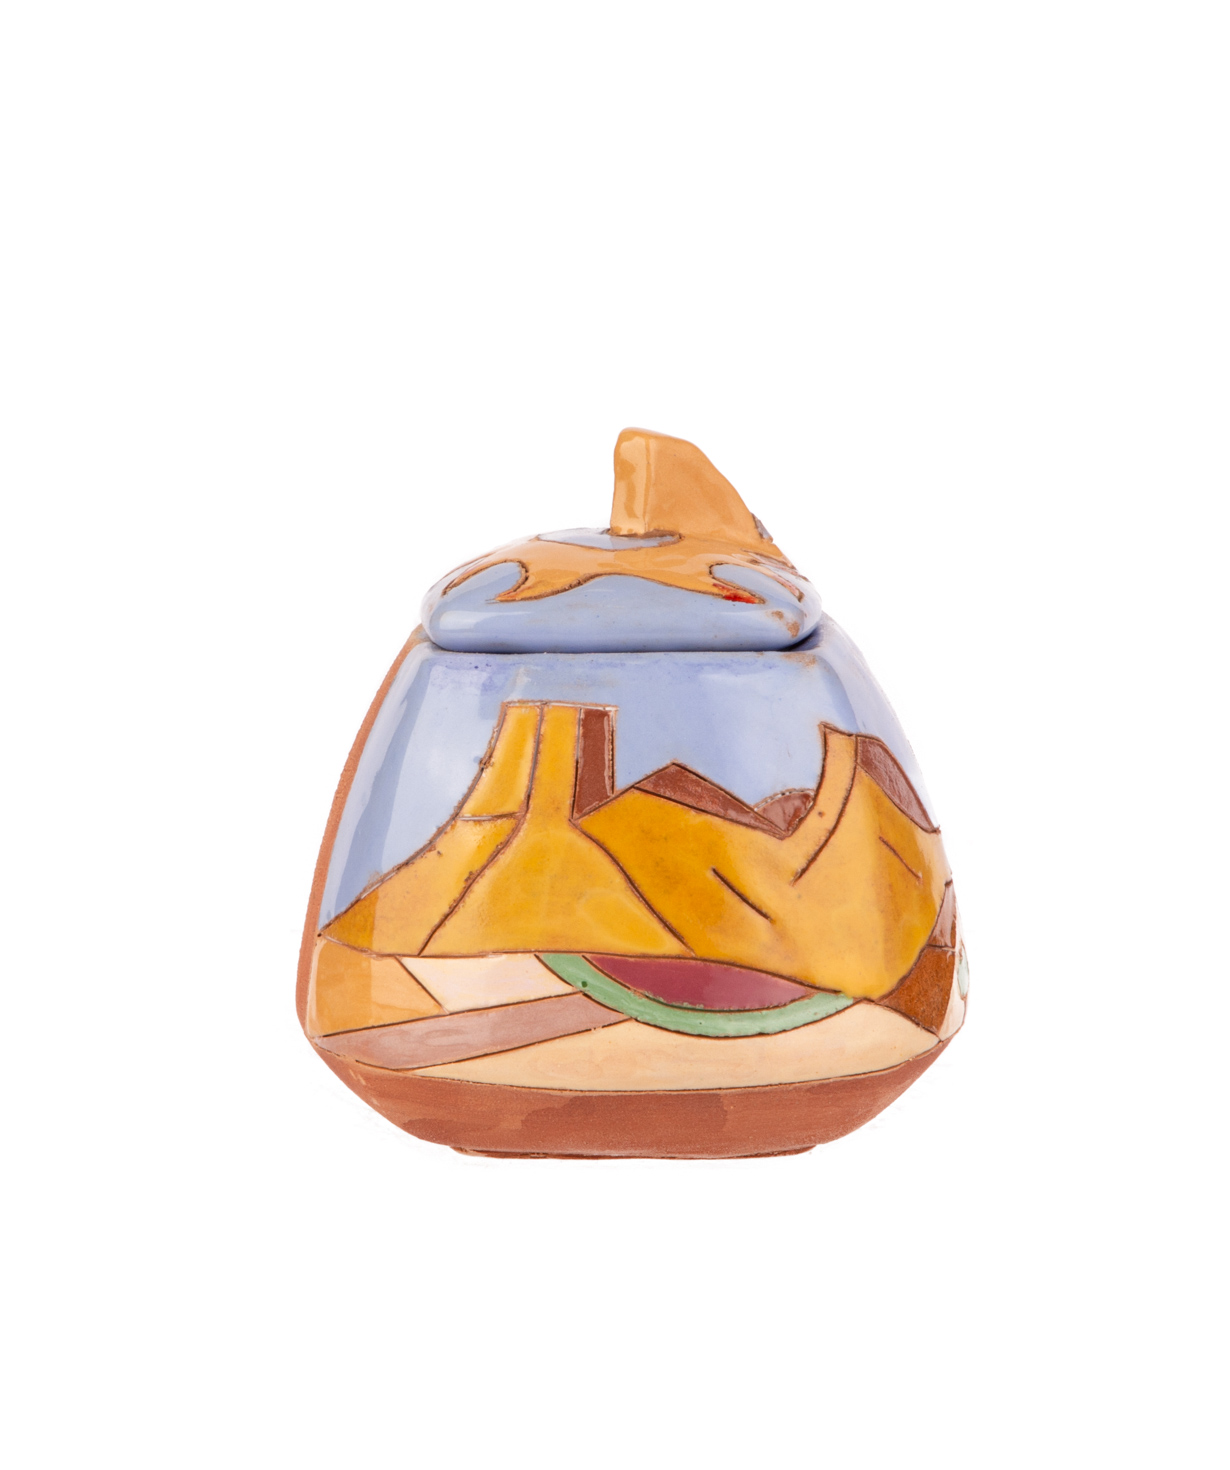 Շաքարաման «Nuard Ceramics» Սարյան